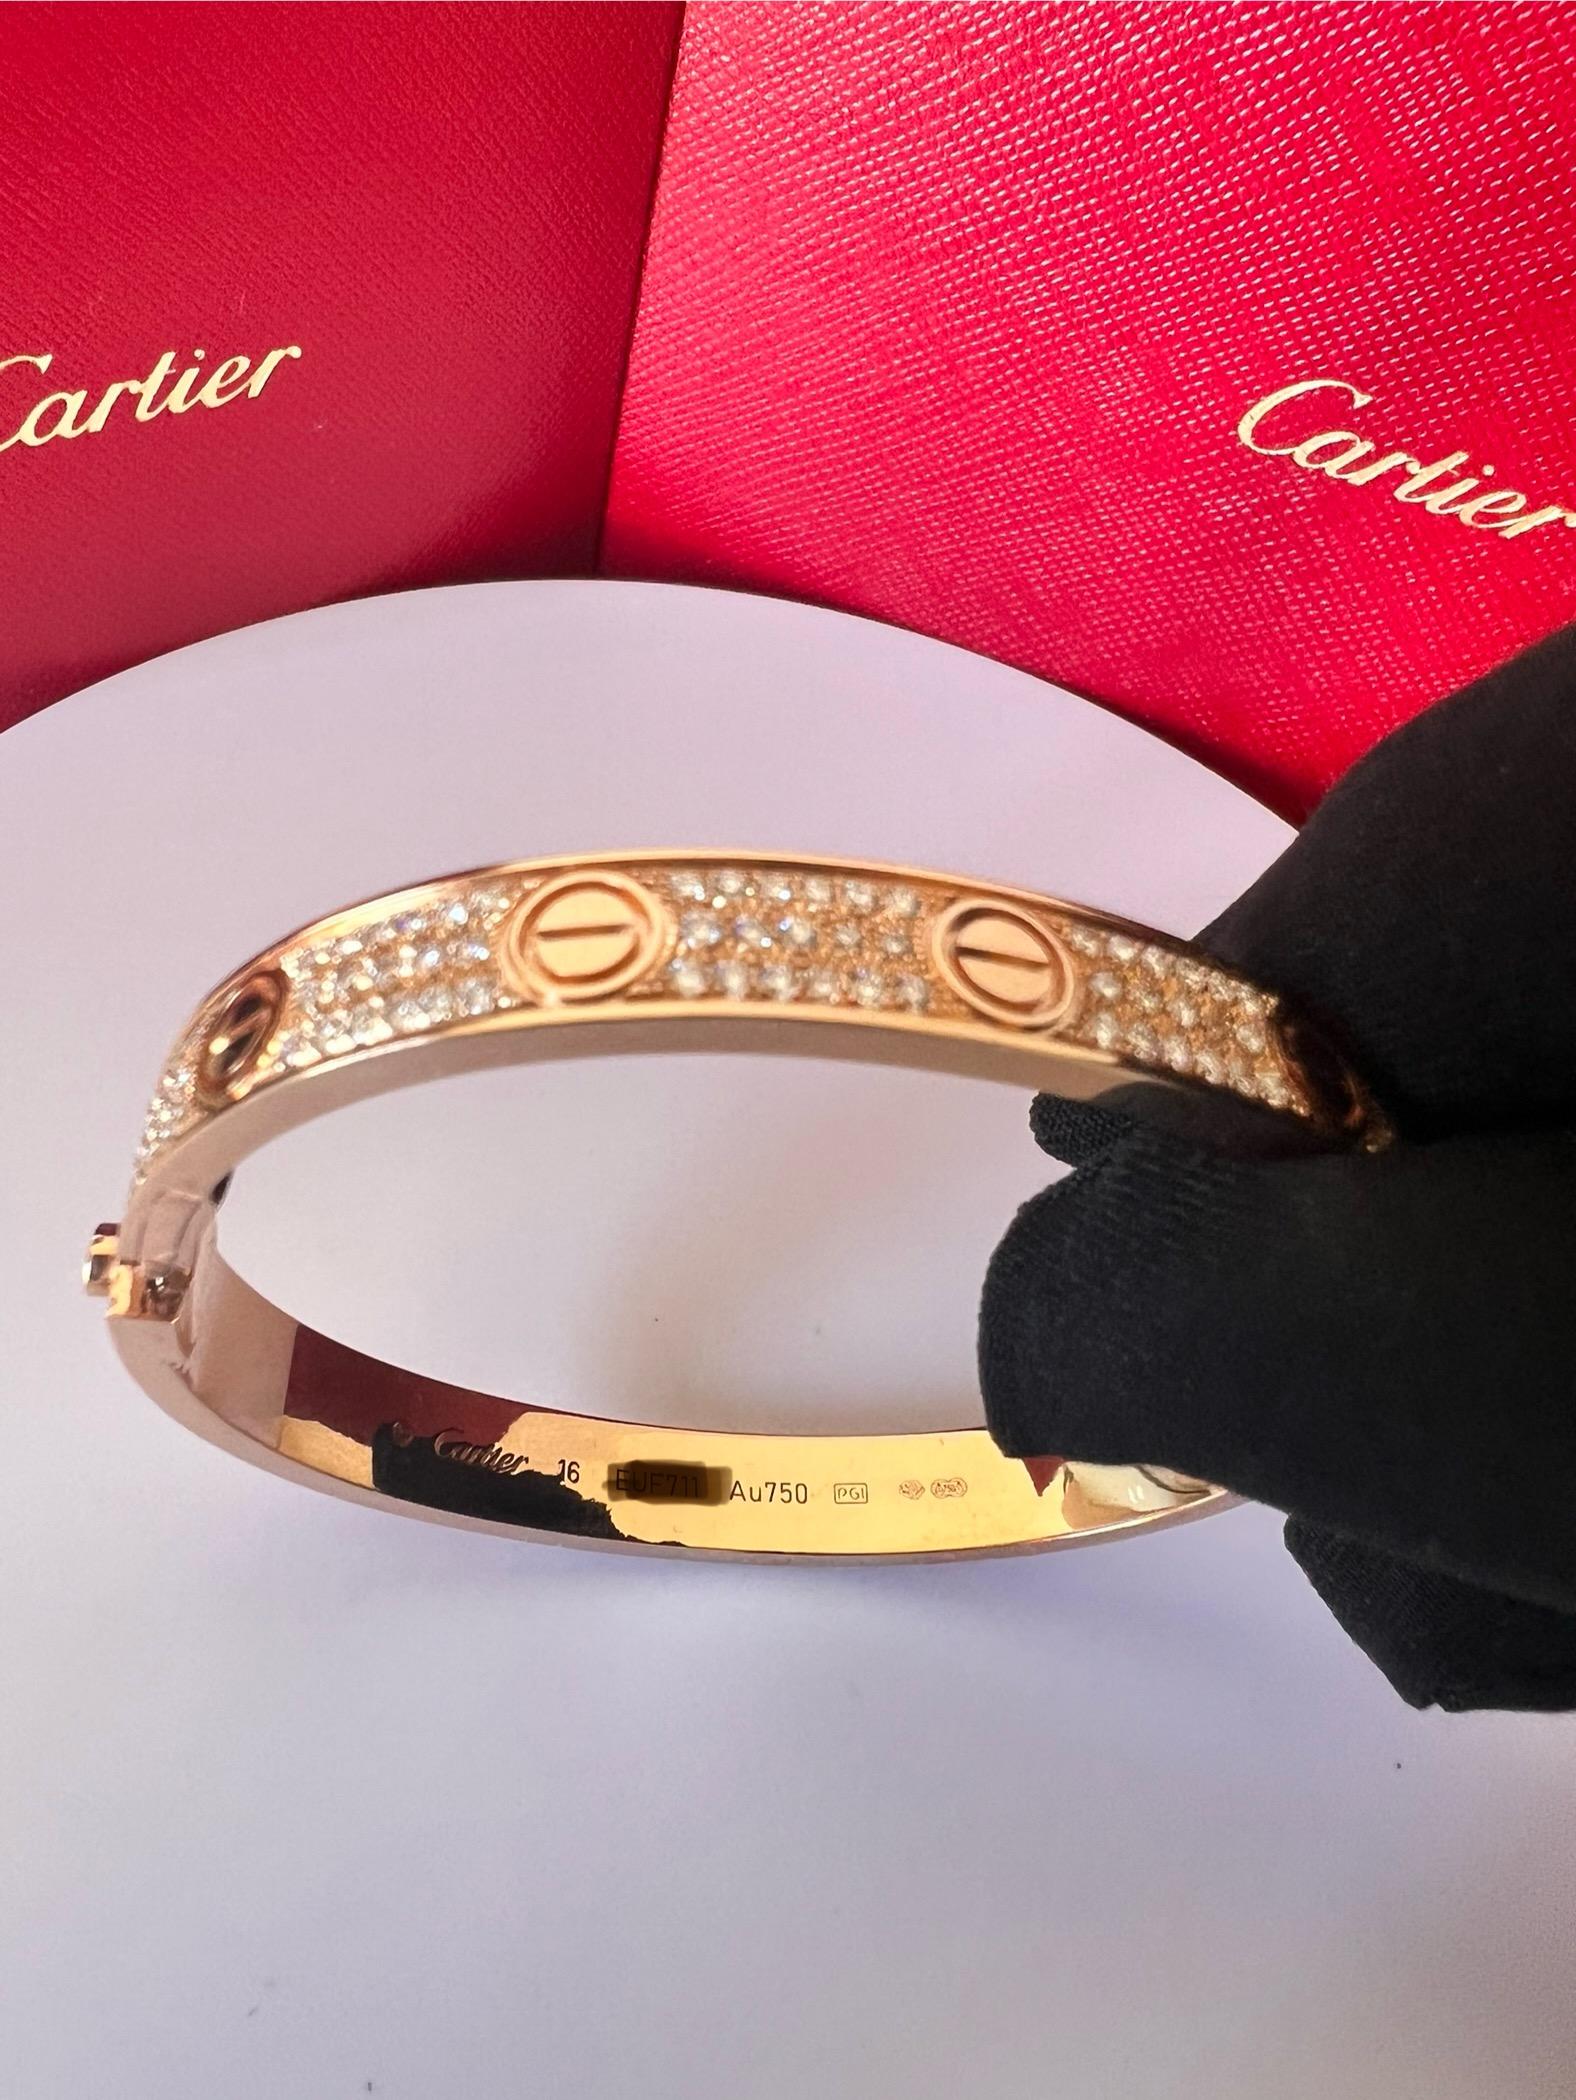 BRACELET D'AMOUR DE CARTIER
Bracelet 'Love' de Cartier en or jaune 18 carats avec vis en or et diamants ronds de taille brillant sertis (couleur D-F, pureté VVS).
Signé Cartier,  750, avec numéro de série et poinçons 
Le bracelet est présenté avec